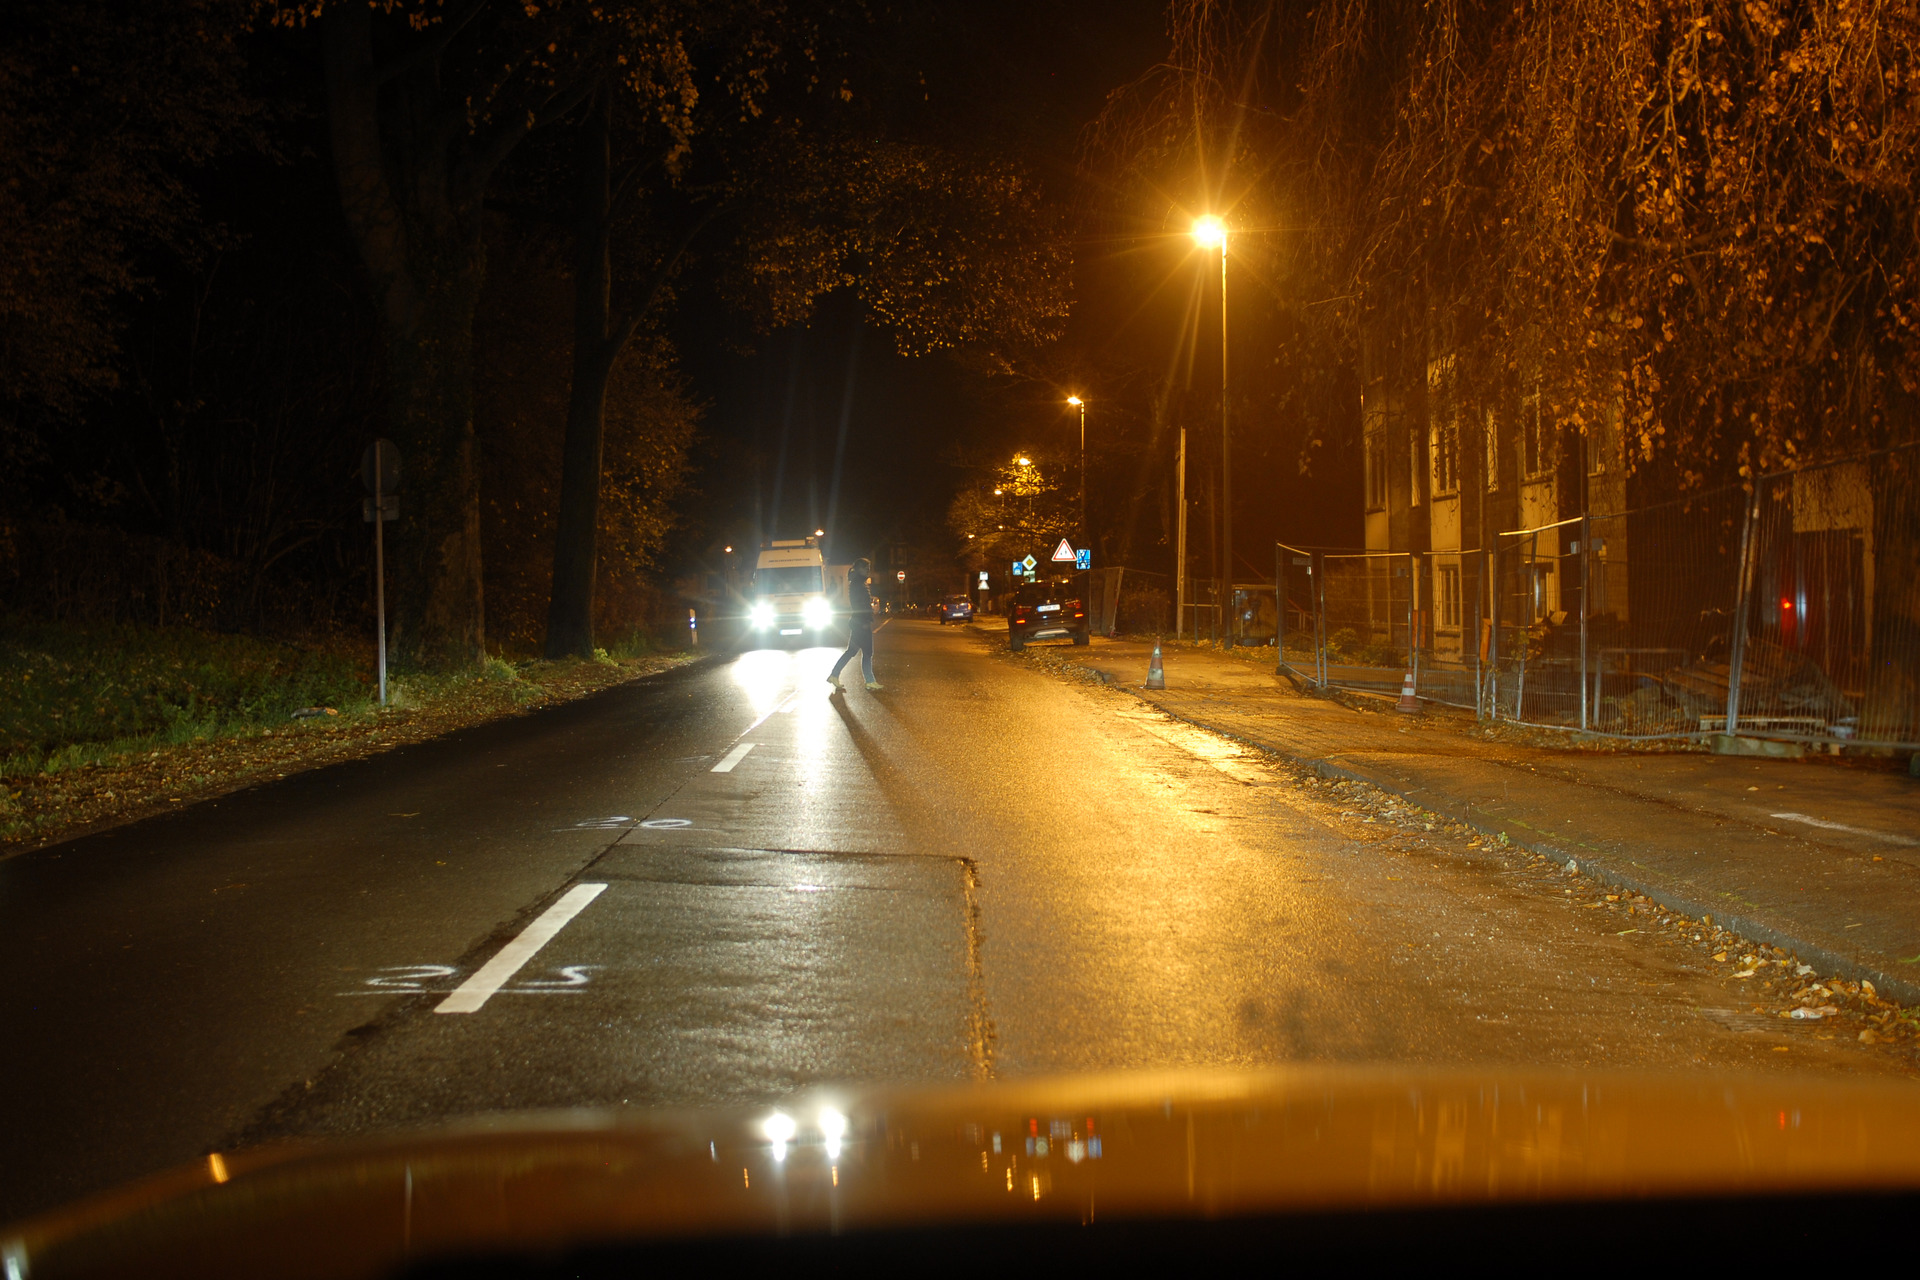 Sicht auf einen dunkel gekleideten Fußgänger in 40m Entfernung mit Blendung durch Gegenverkehr und bei Nässe